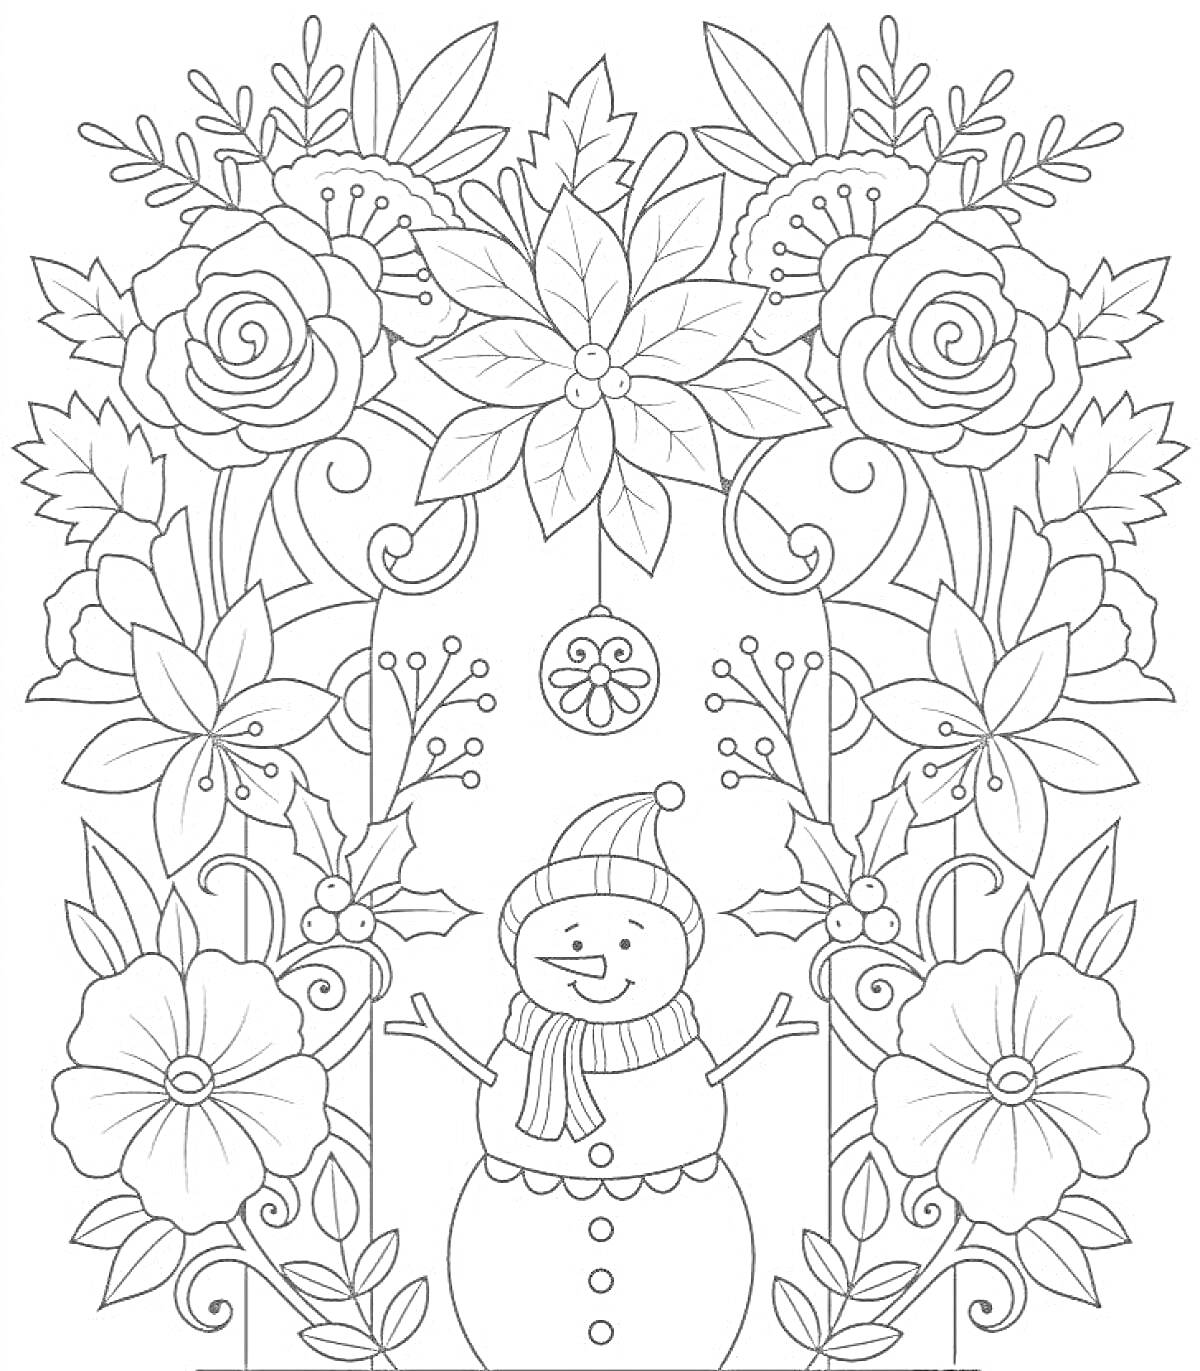 Раскраска Снеговик с цветами, листьями и ёлочными украшениями